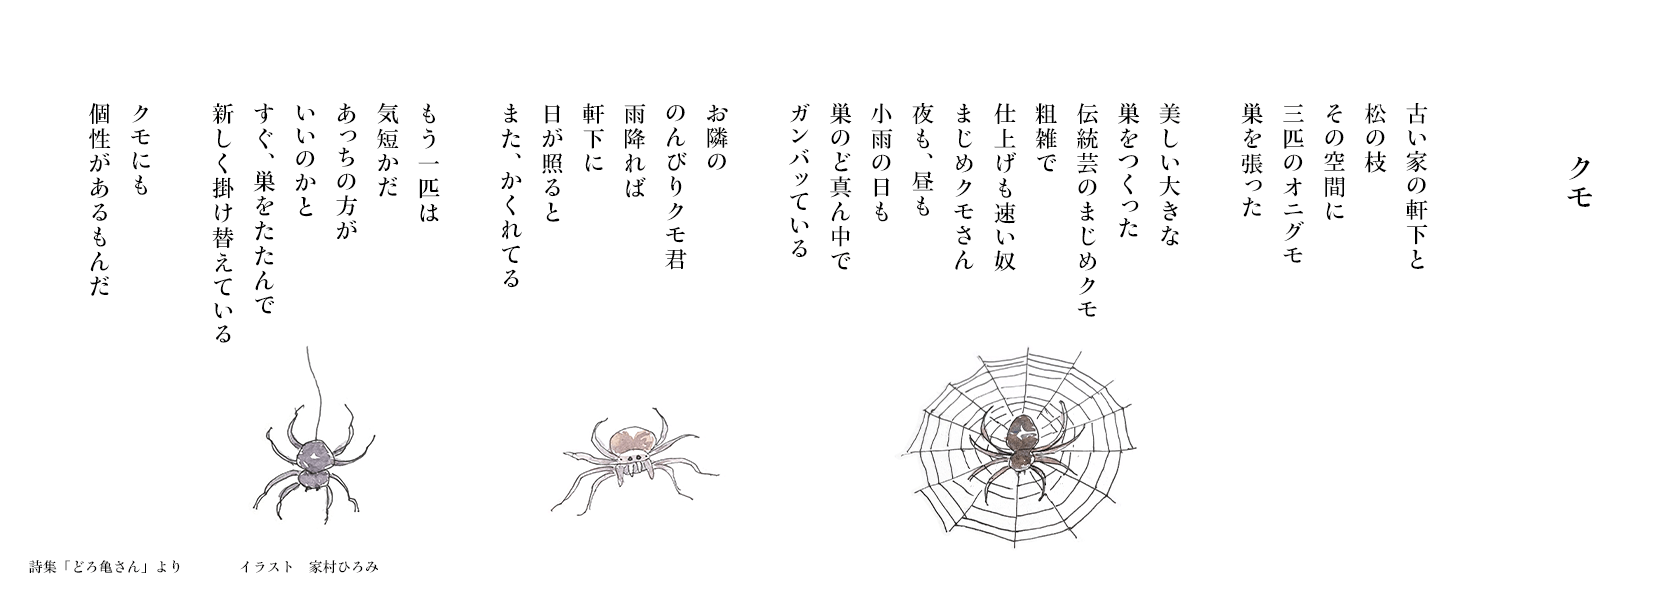 【クモ】詩集「どろ亀さん III」より